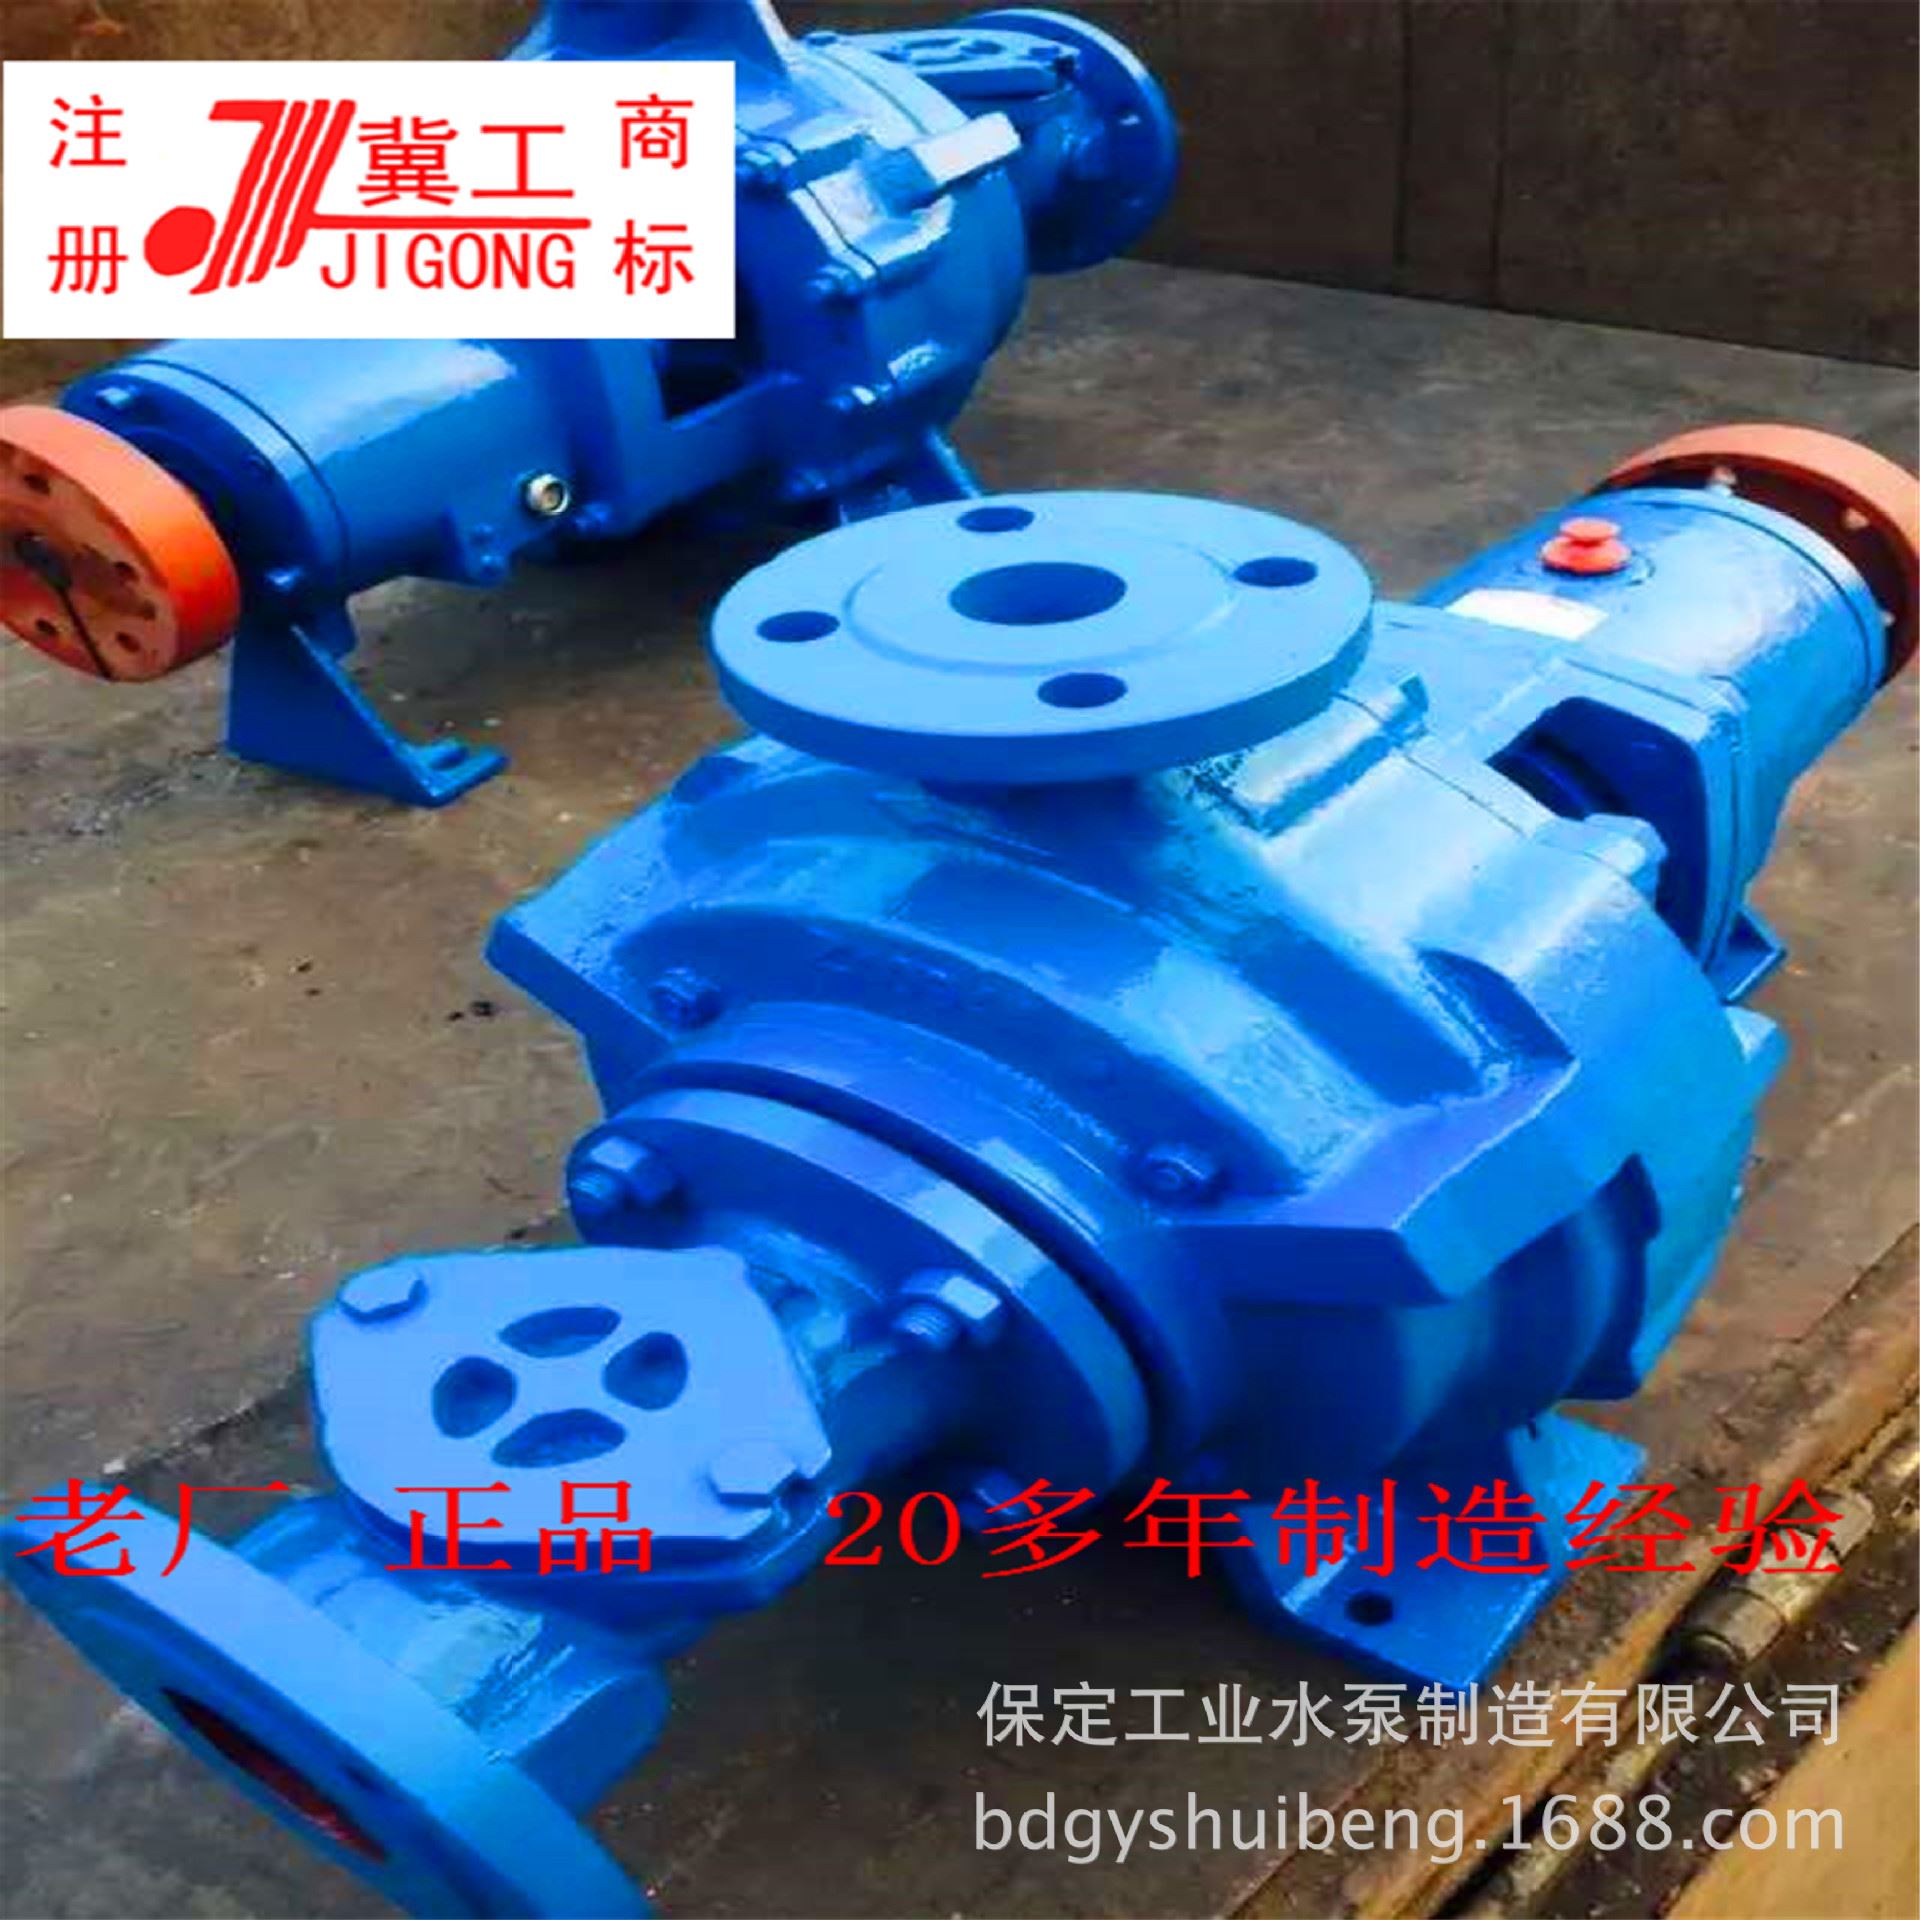 冀保定水泵造纸厂用150LXLZ220-30两相流纸浆泵高效节能适用广泛